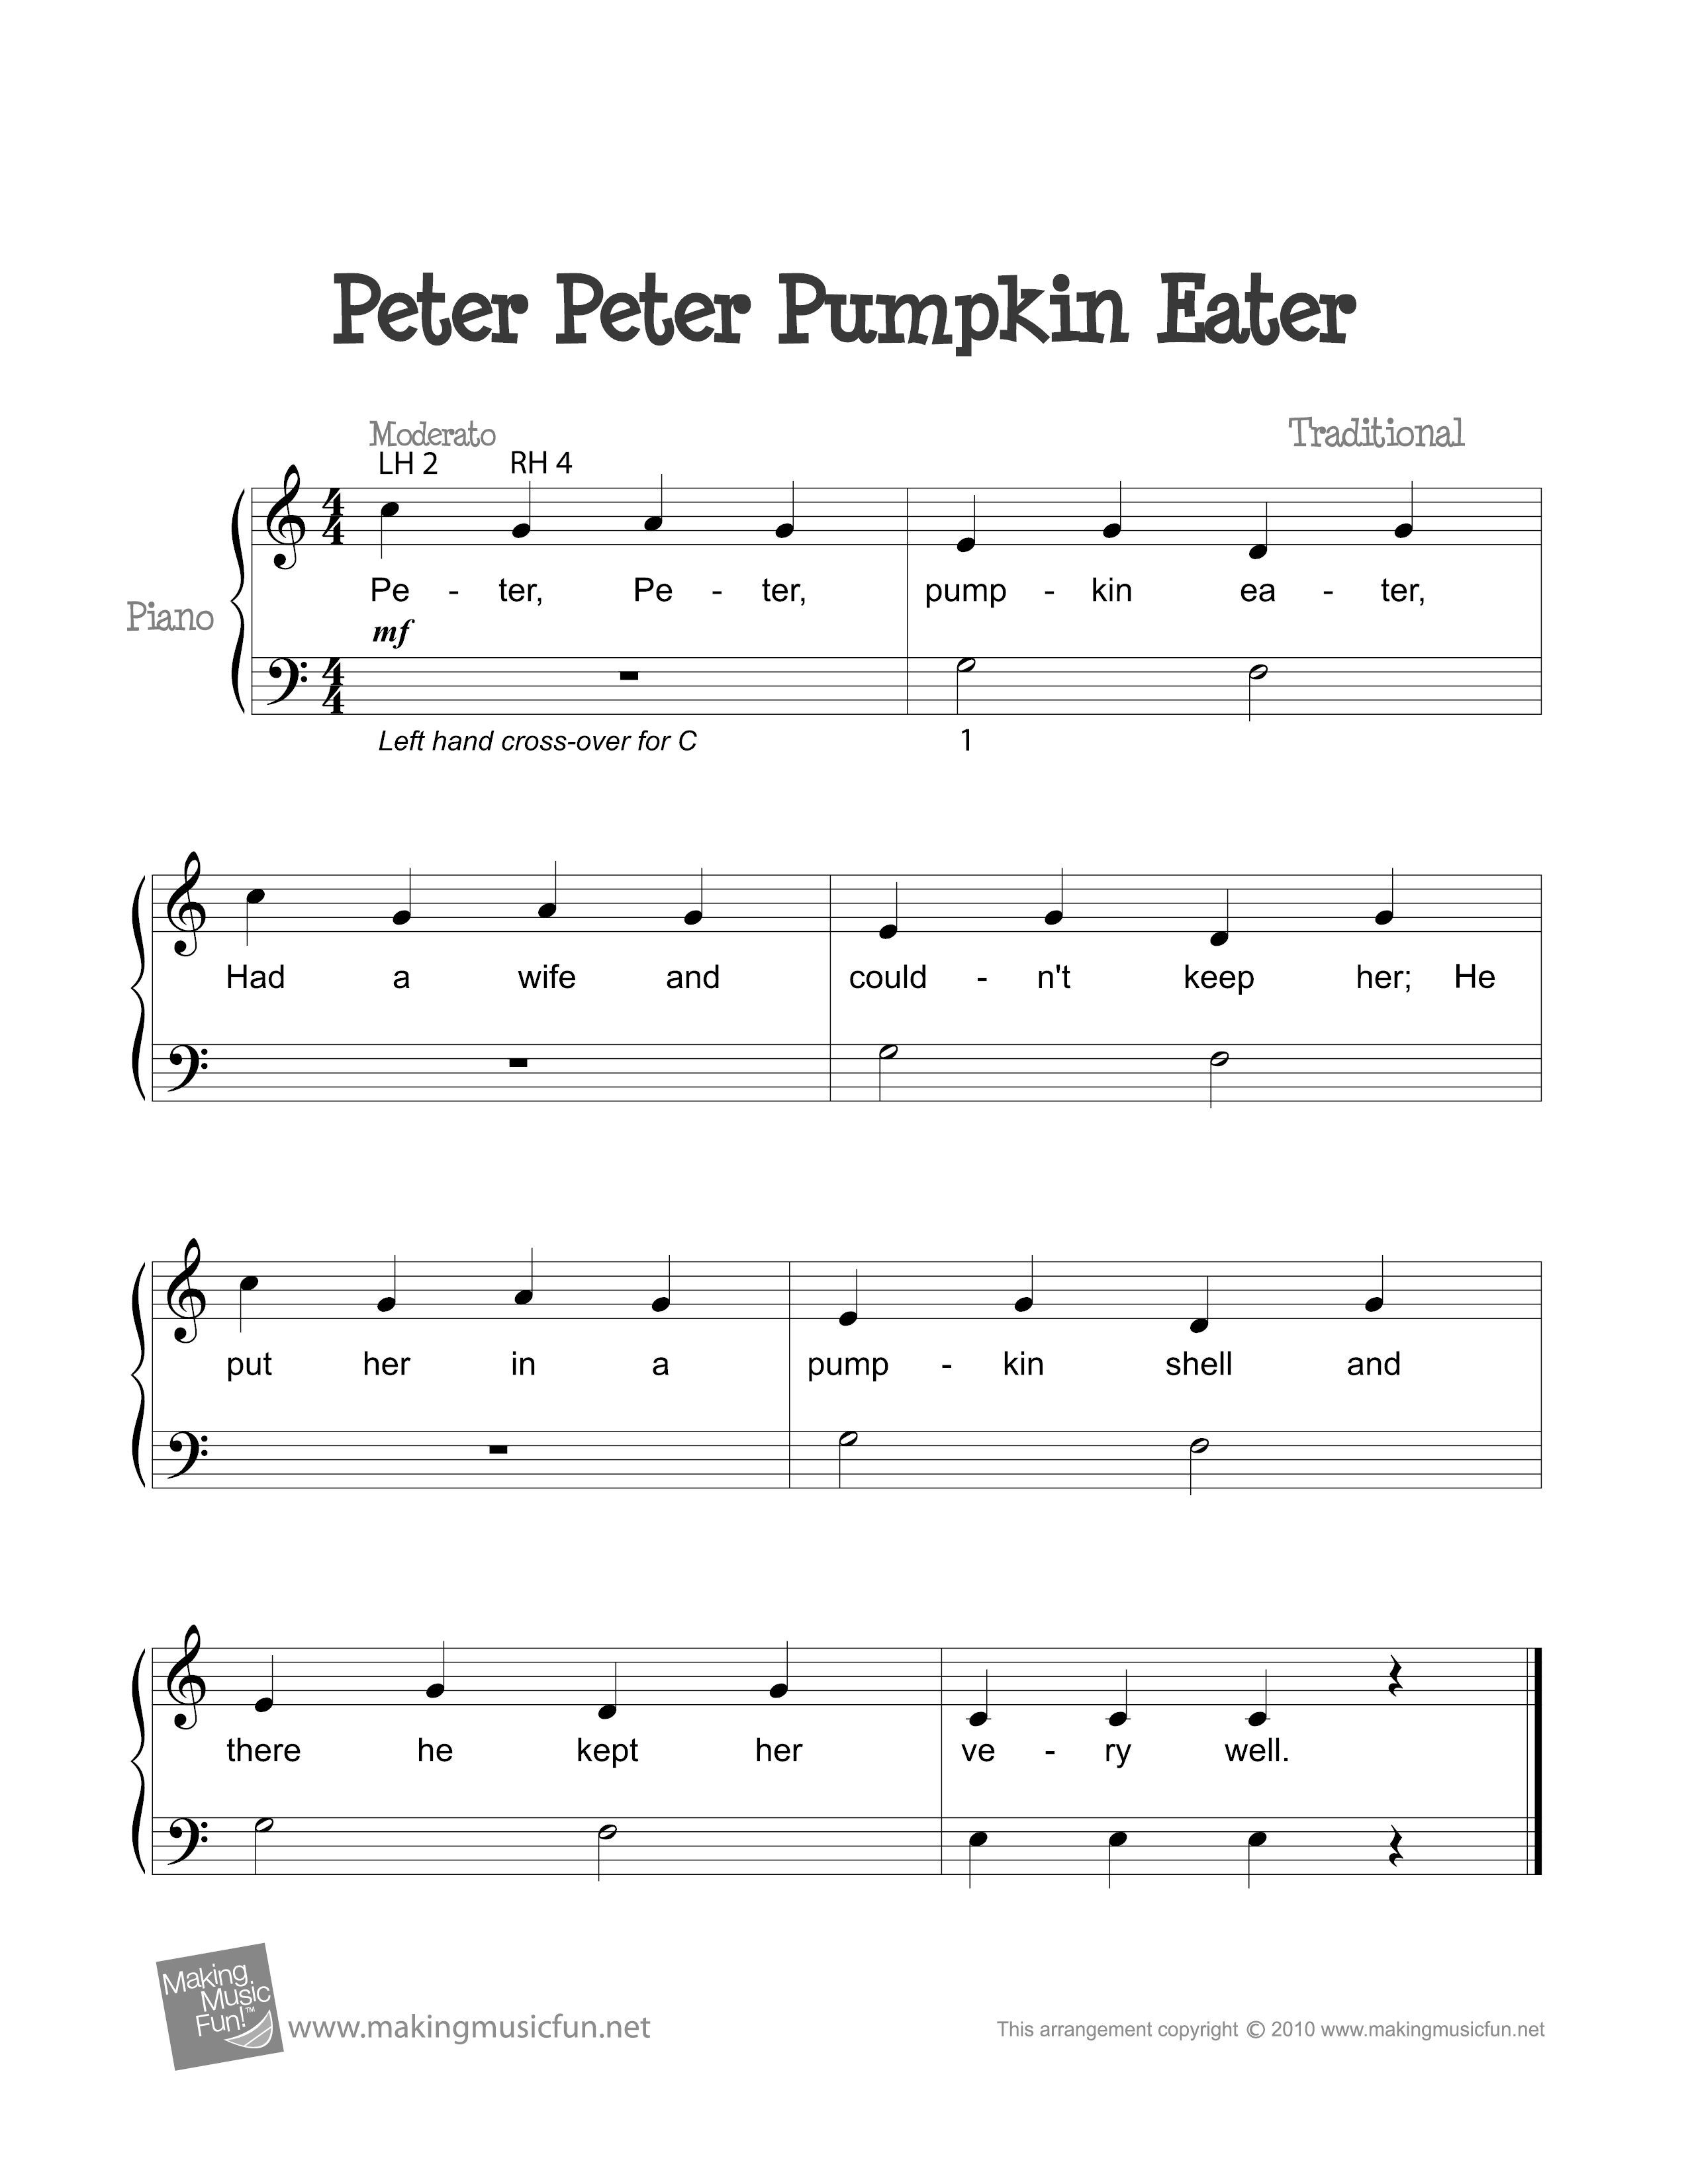 Peter, Peter Pumpkin Eater Score